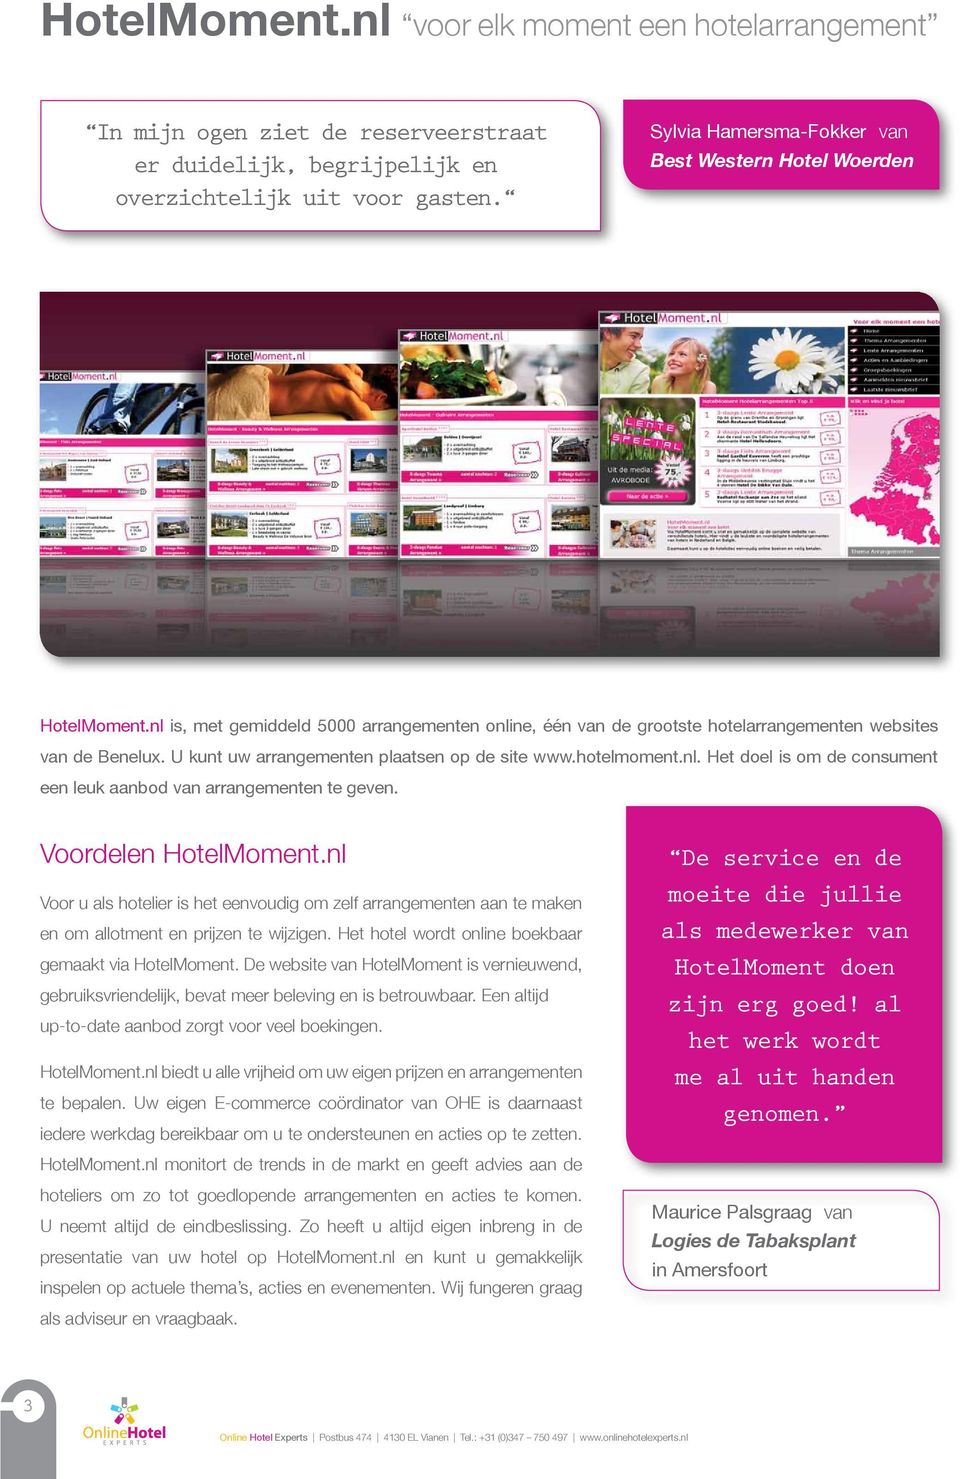 U kunt uw arrangementen plaatsen op de site www.hotelmoment.nl. Het doel is om de consument een leuk aanbod van arrangementen te geven. Voordelen HotelMoment.